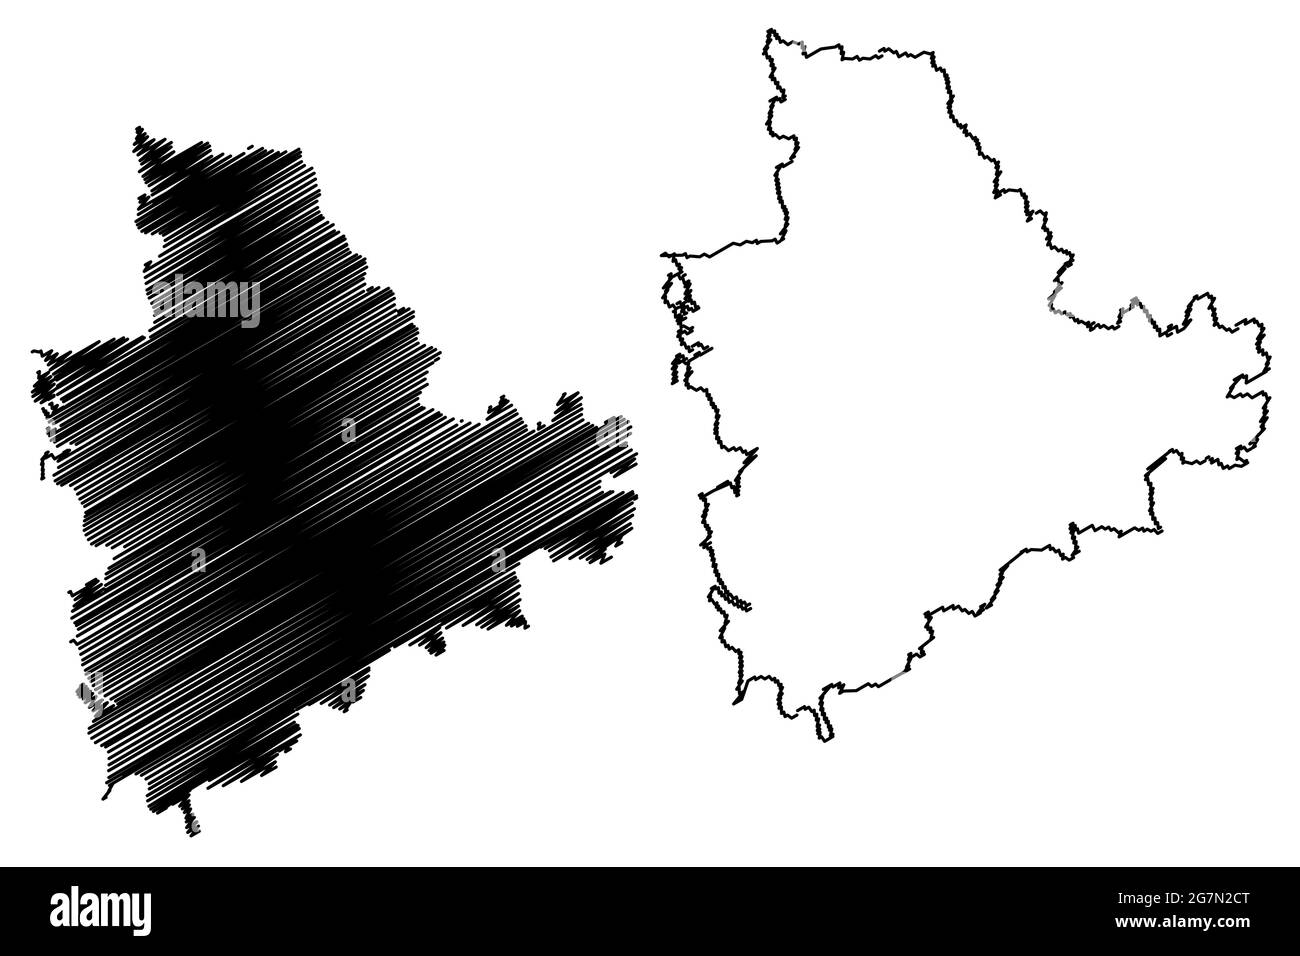 Main-Spessart Bezirk (Bundesrepublik Deutschland, Landkreis Unterfranken, Freistaat Bayern) Kartenvektordarstellung, Scribble-Skizze M Stock Vektor